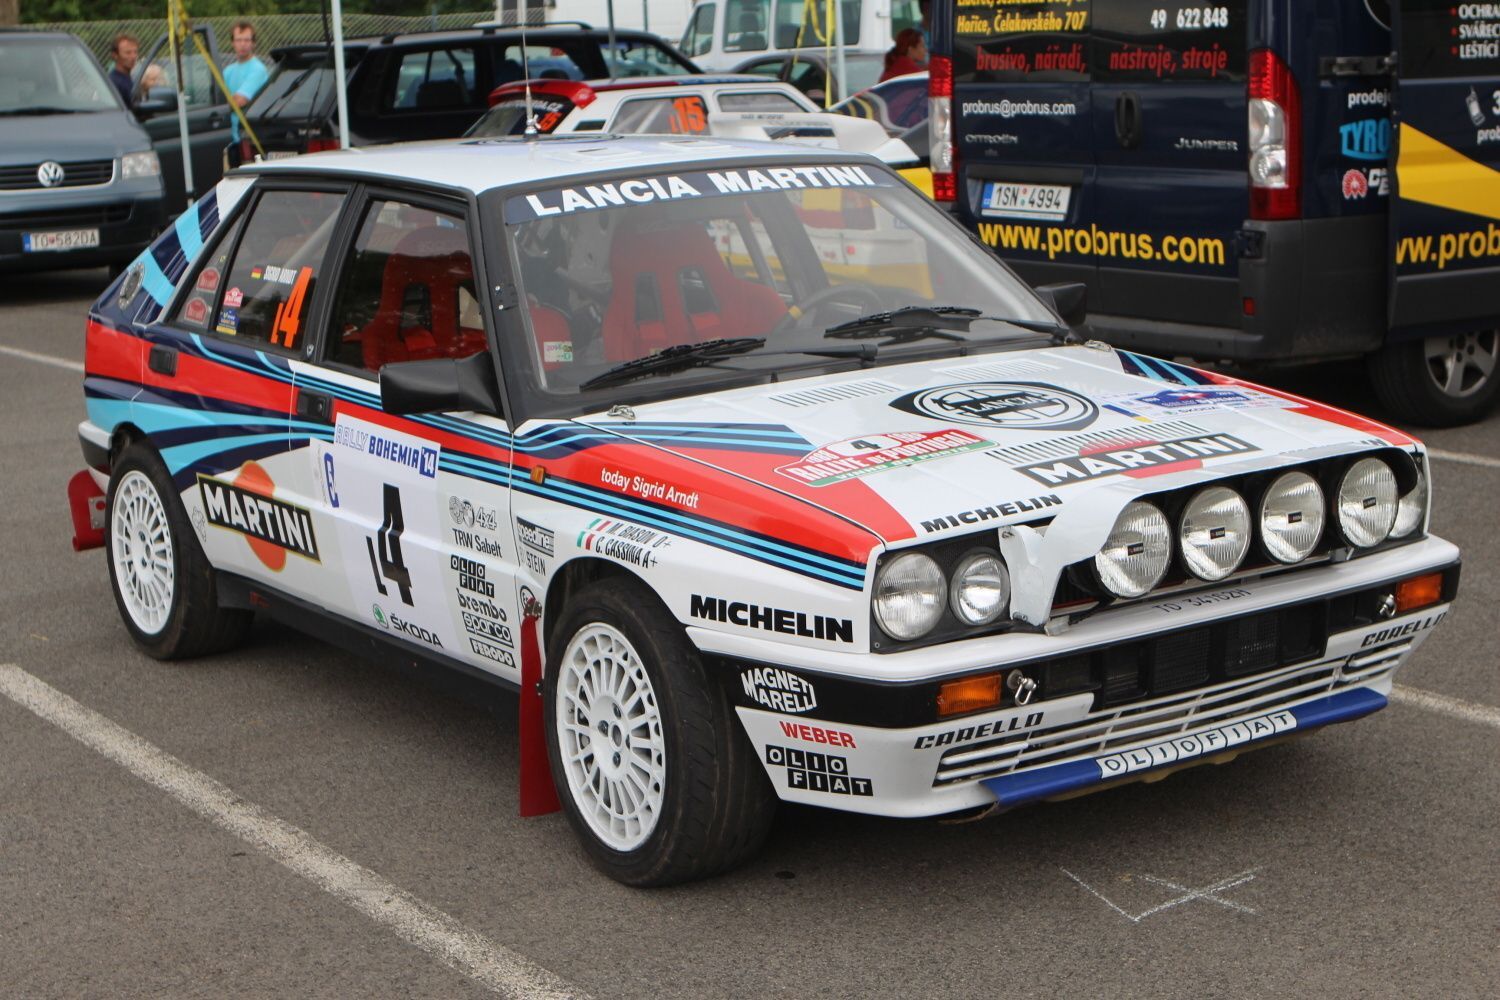 Rallye Bohemia 2014: Landia HF Integrale v barvách Martini z roku 1985.